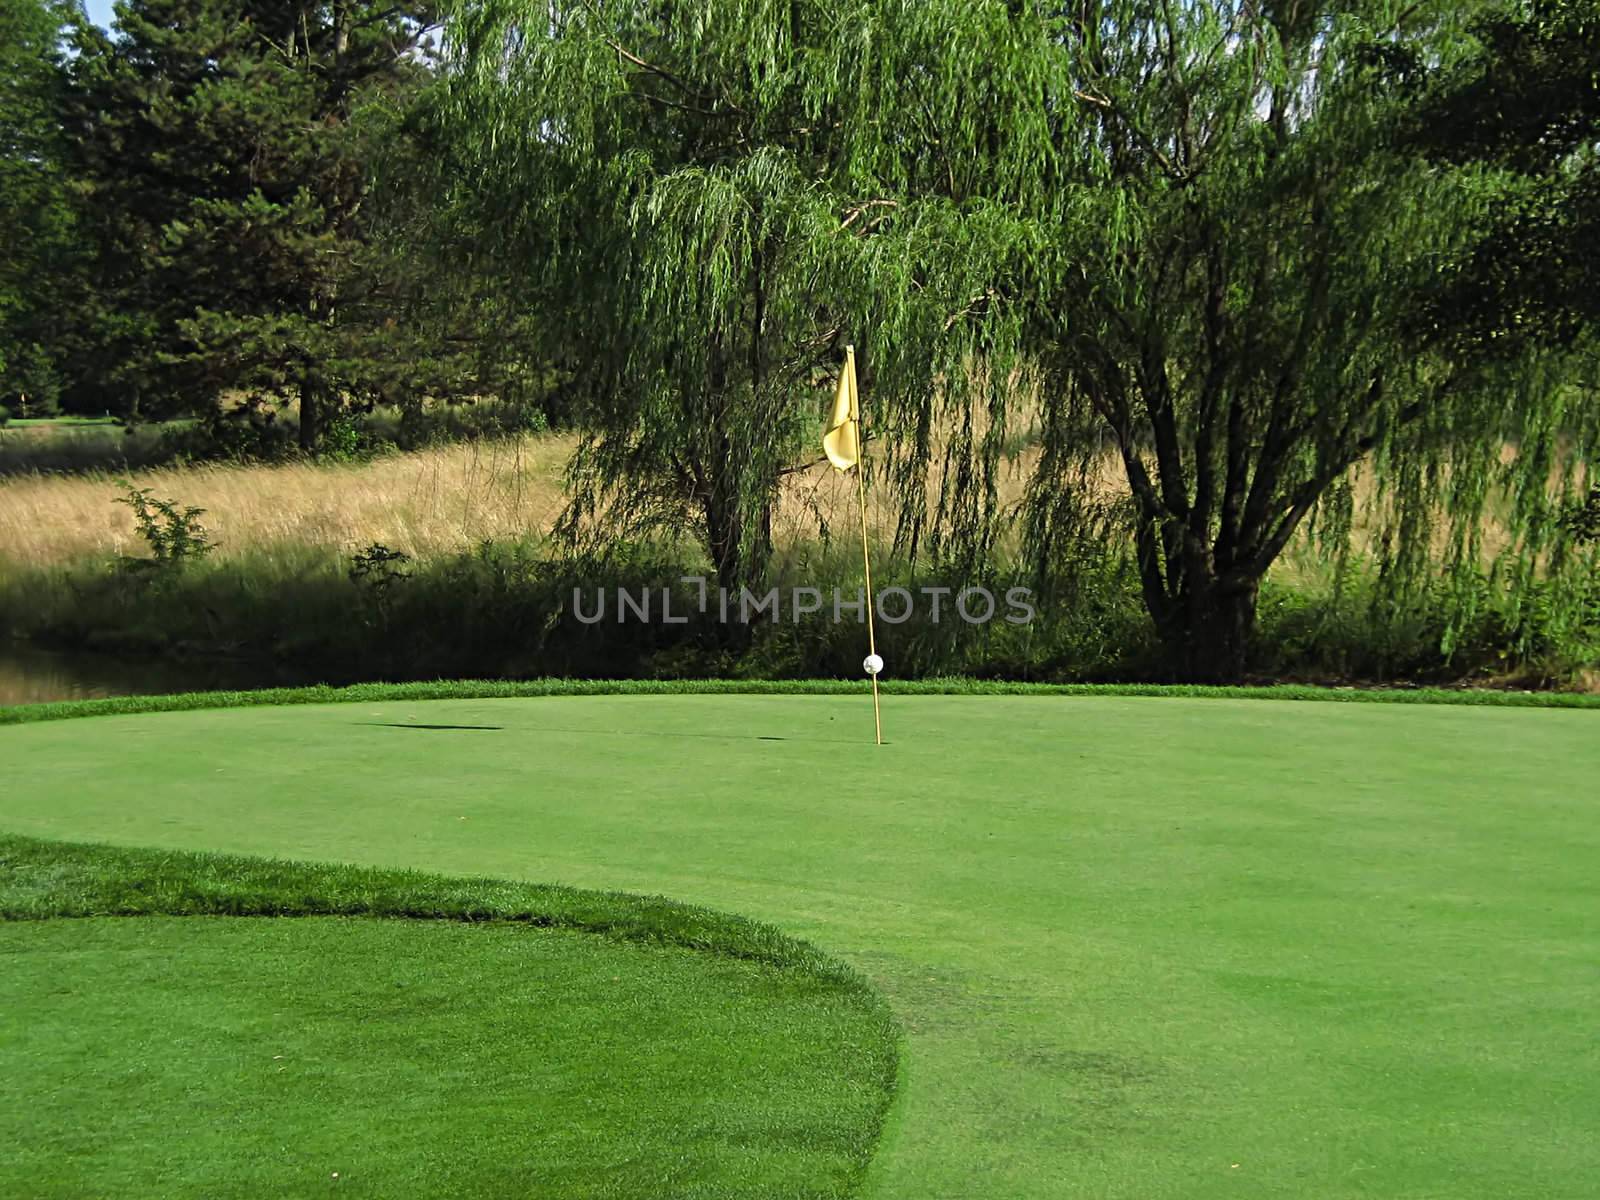 Golf Course by llyr8